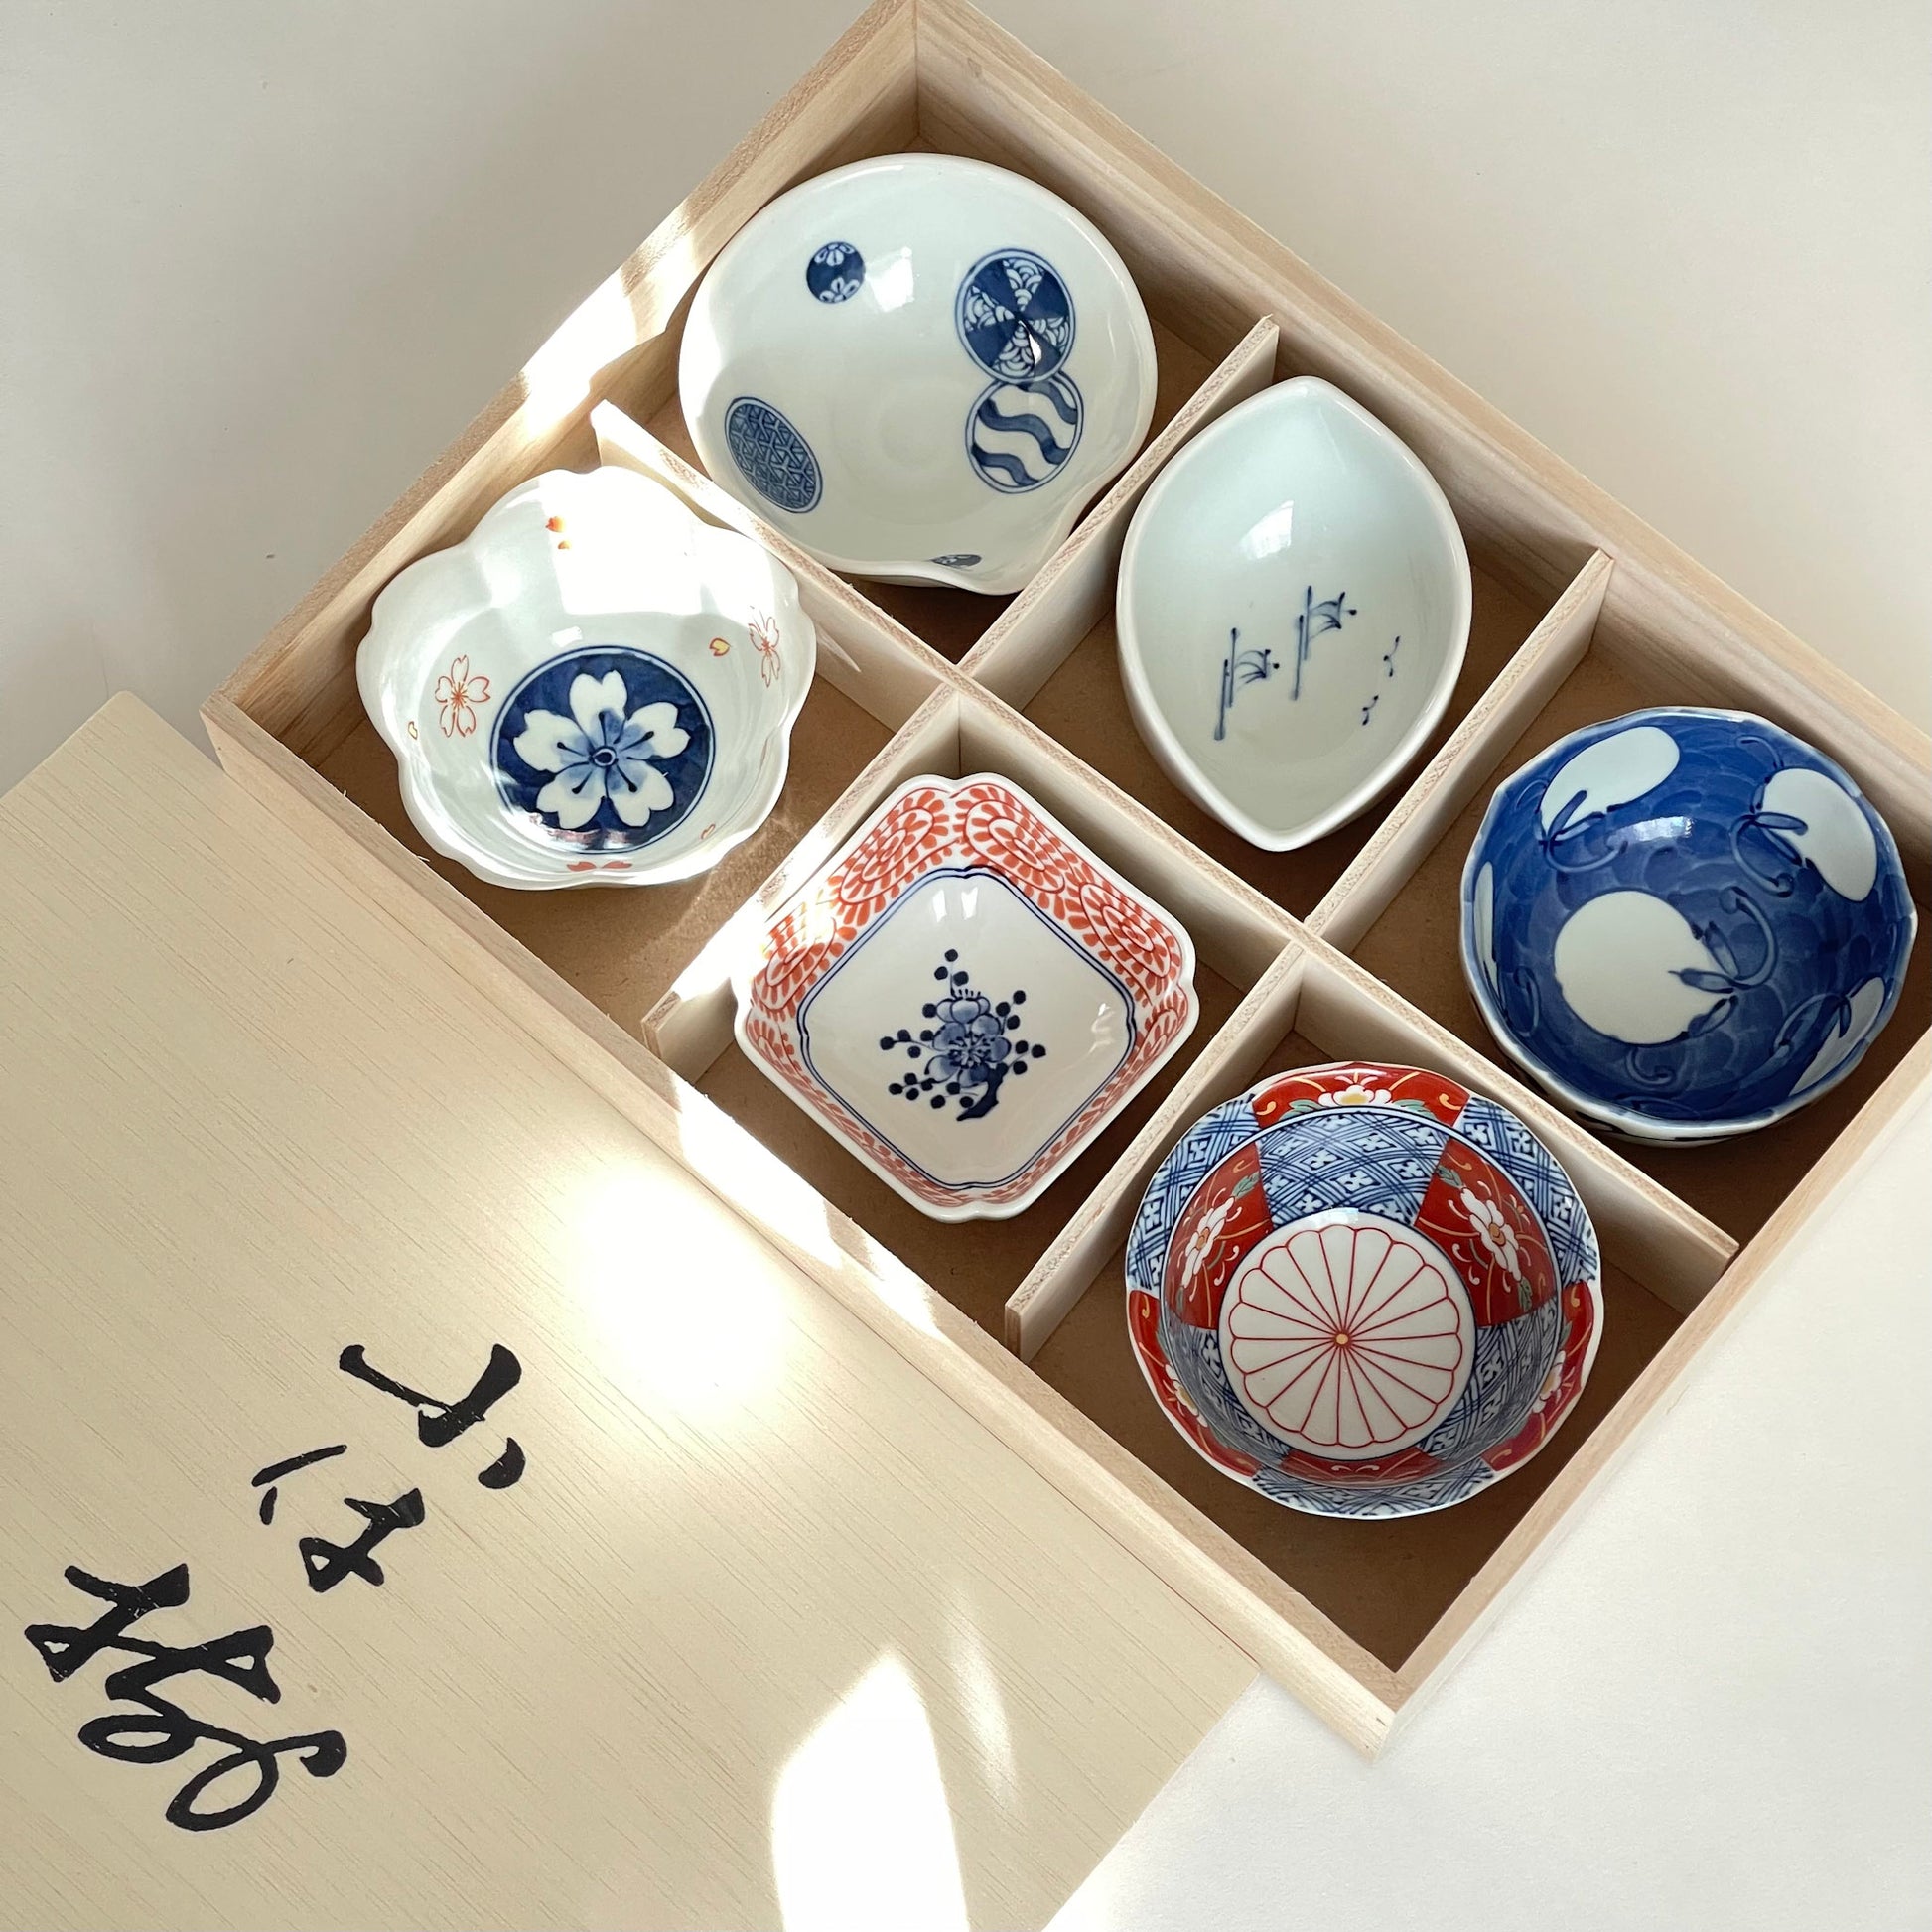 japanese style ceramic bohemia underglazed rice| Alibaba.com